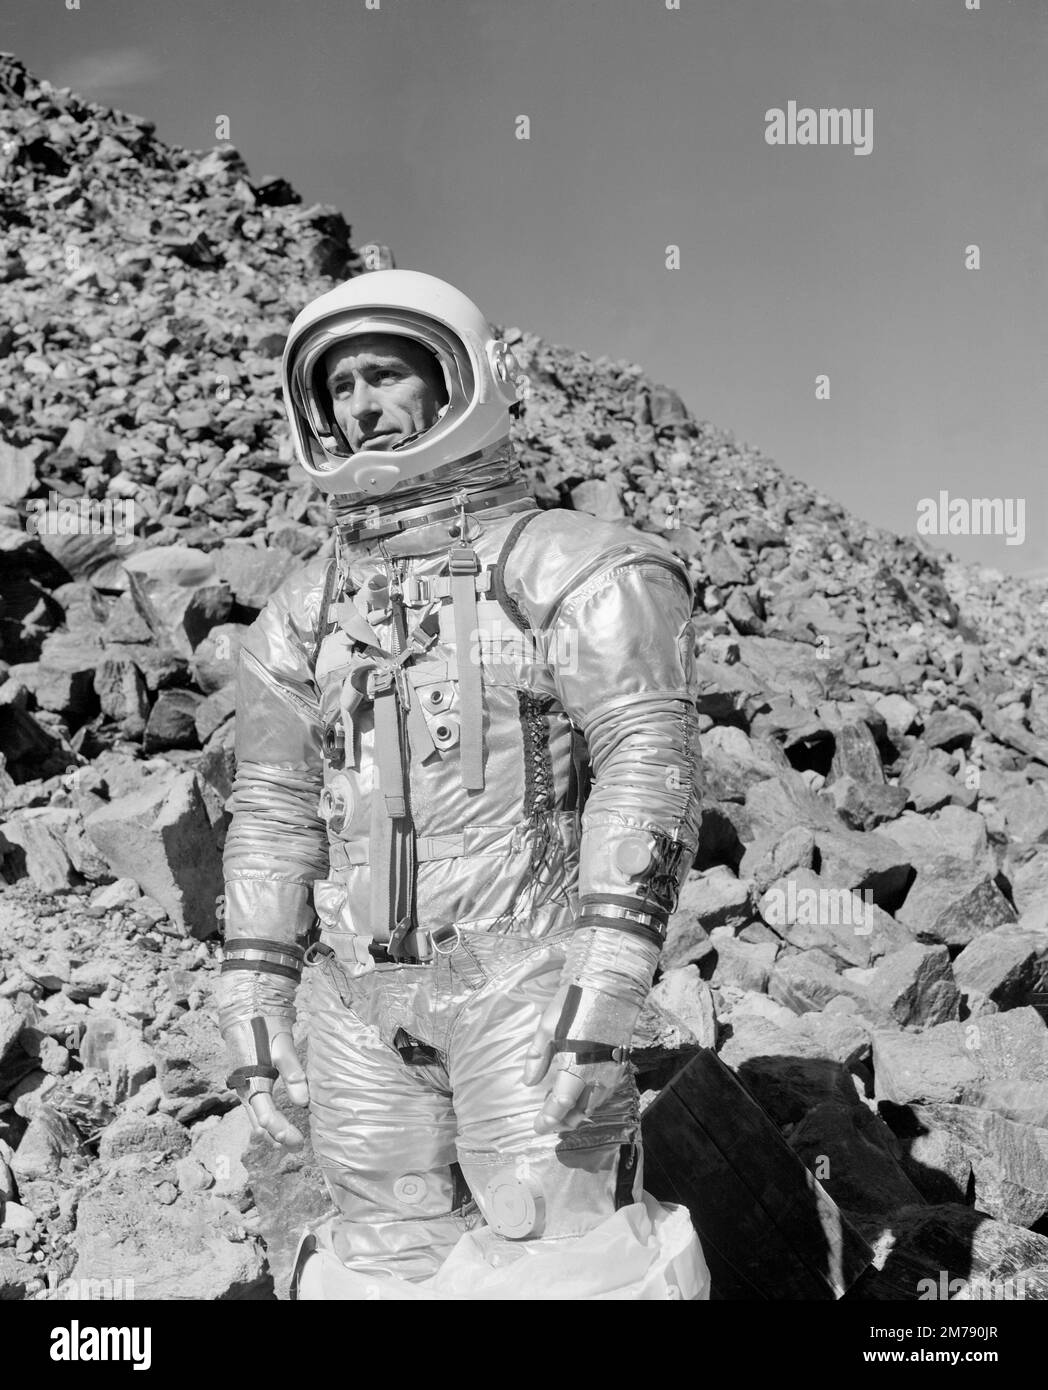 Paulina Lake, États-Unis. 22 septembre 1964. Walter Cunningham, astronaute de l'équipe de premier plan Apollo VII de la NASA, porte une combinaison pressurisée lorsqu'il monte une pente de roche lors de l'entraînement de familiarisation en surface lunaire dans les champs d'écoulement obsidienne, à 22 septembre 1964 près du lac Paulina, en Oregon. Cunningham meurt 4 janvier 2023 à l'âge de 90 ans, le dernier membre survivant de la mission Apollo 7 de la NASA. Banque D'Images